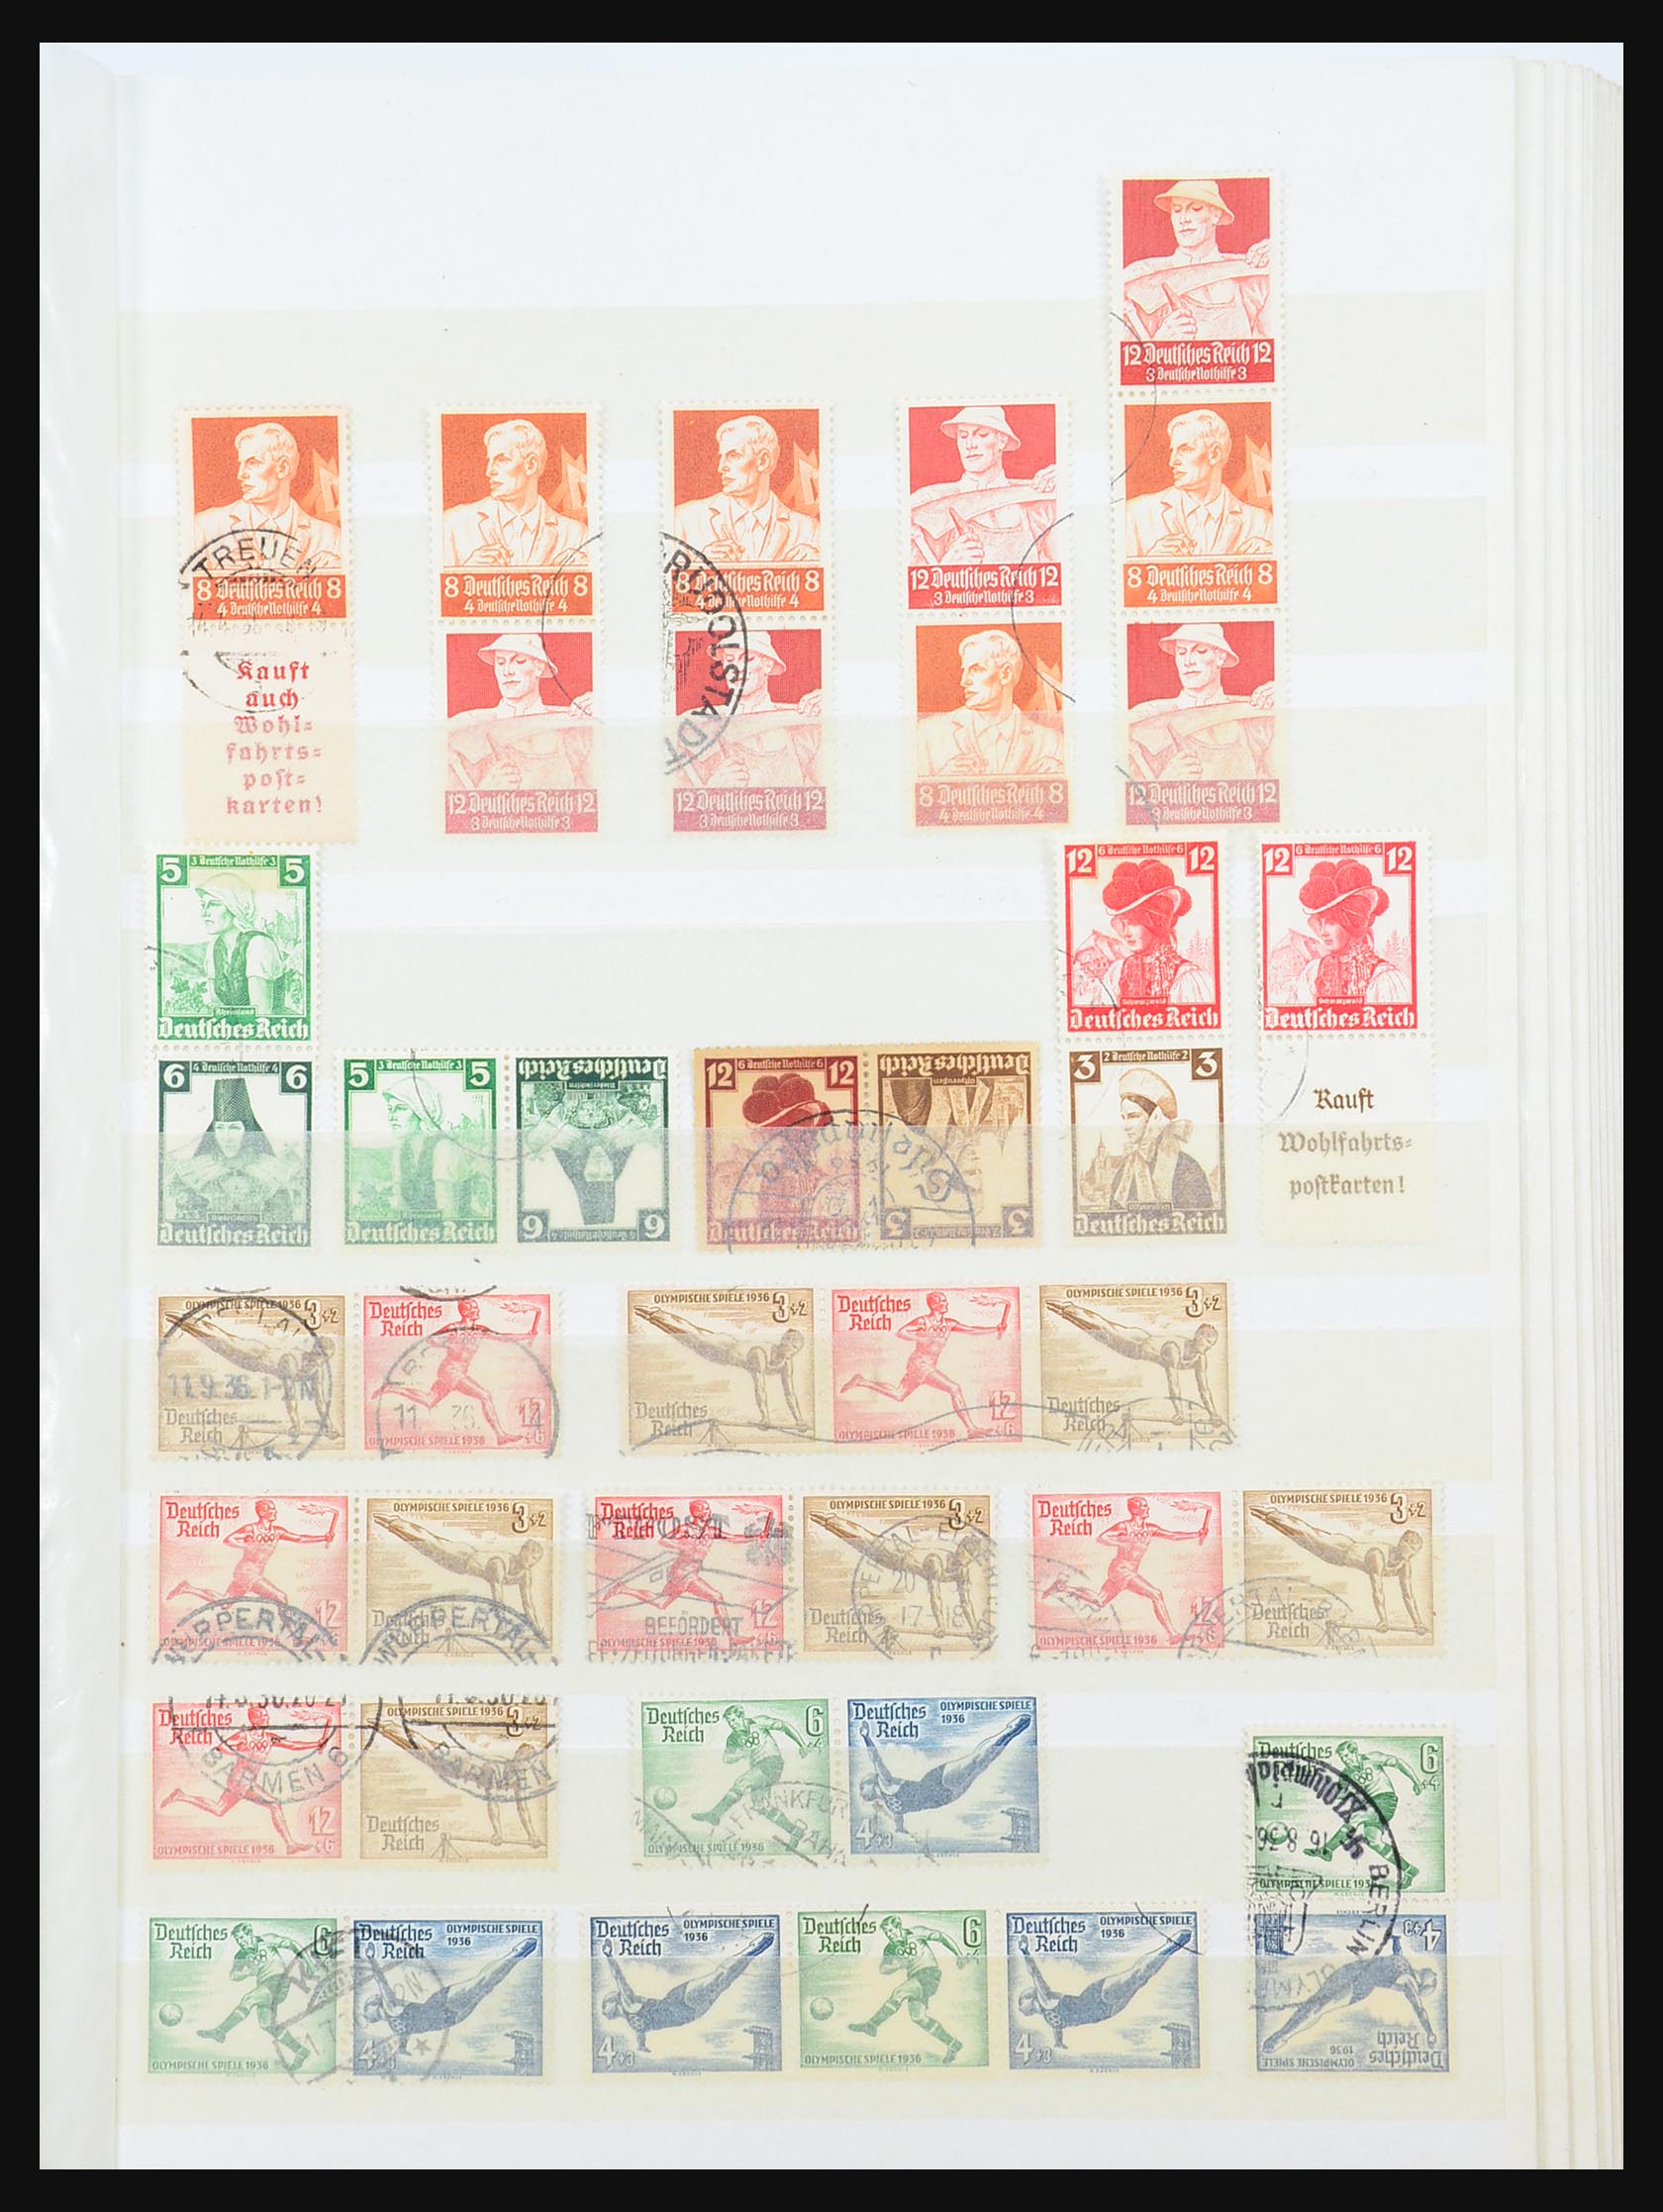 31390 015 - 31390 Duitse Rijk combinaties 1913-1941.